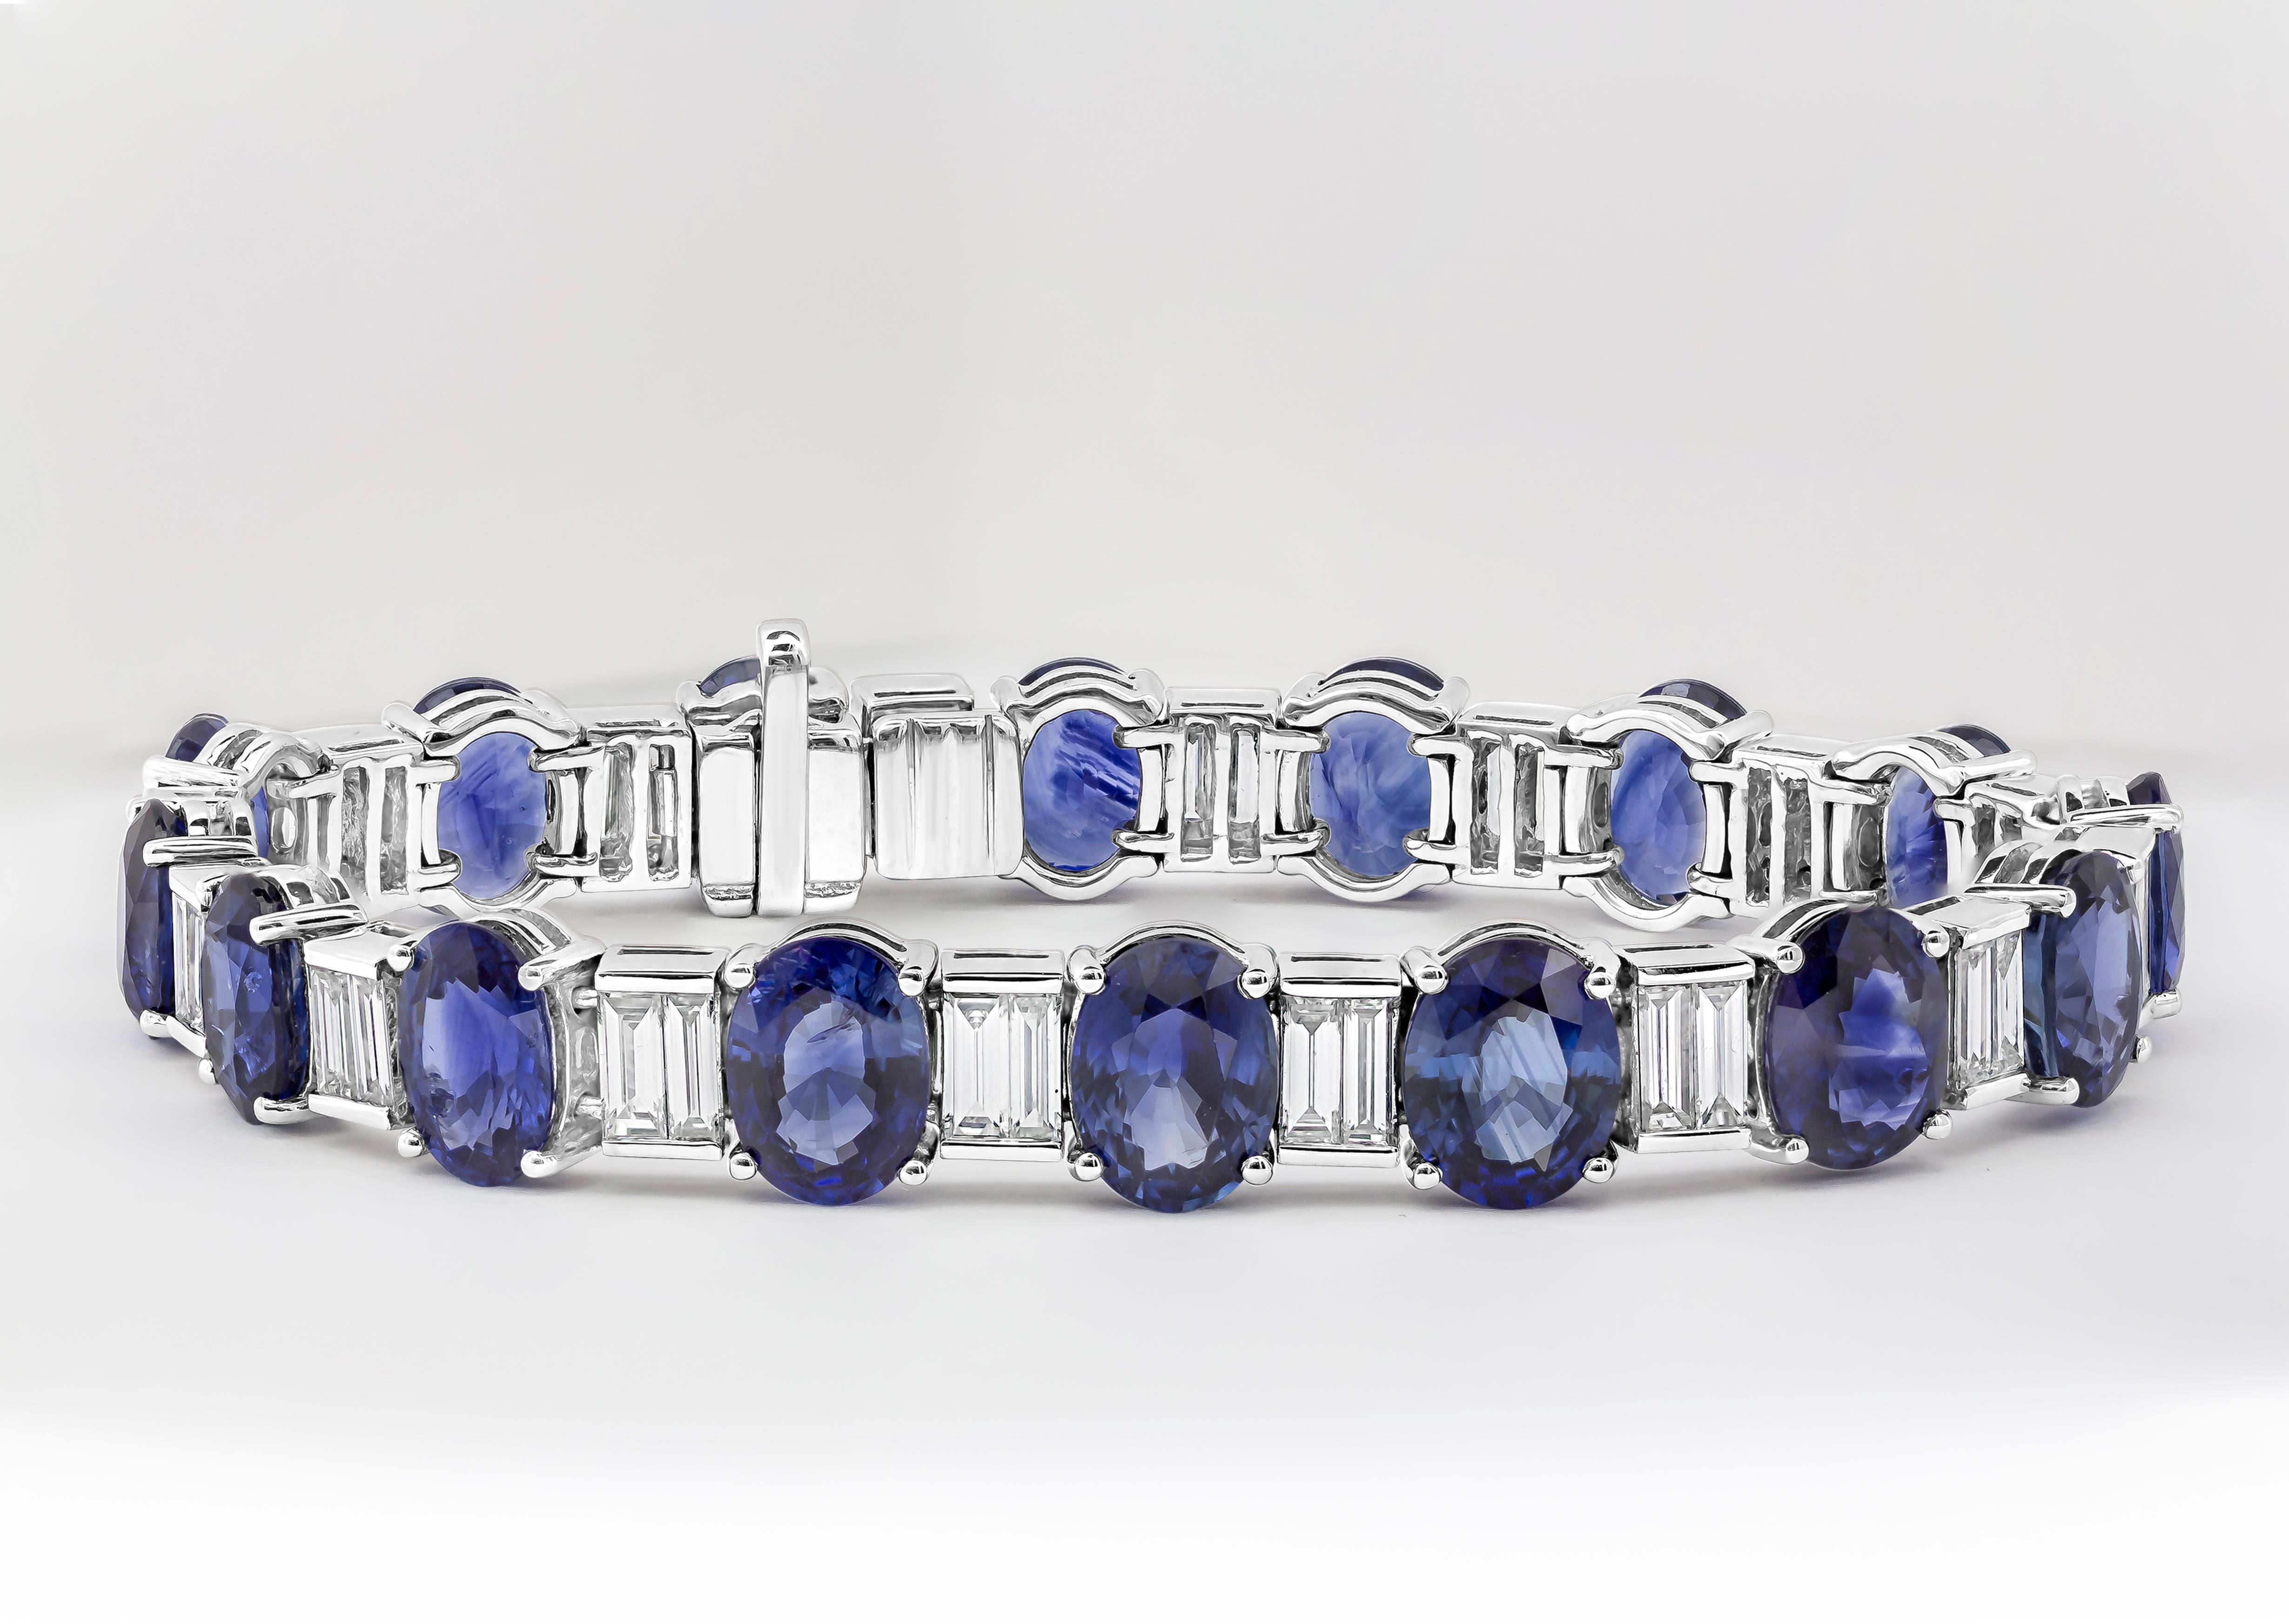 Ein exquisites und luxuriöses Armband mit einem blauen Saphir von 33,66 Karat im Ovalschliff, gefasst in einer klassischen vierzackigen Korbfassung. Eleganter Abstand zwischen den Diamanten im Baguetteschliff mit einem Gesamtgewicht von 3,35 Karat.